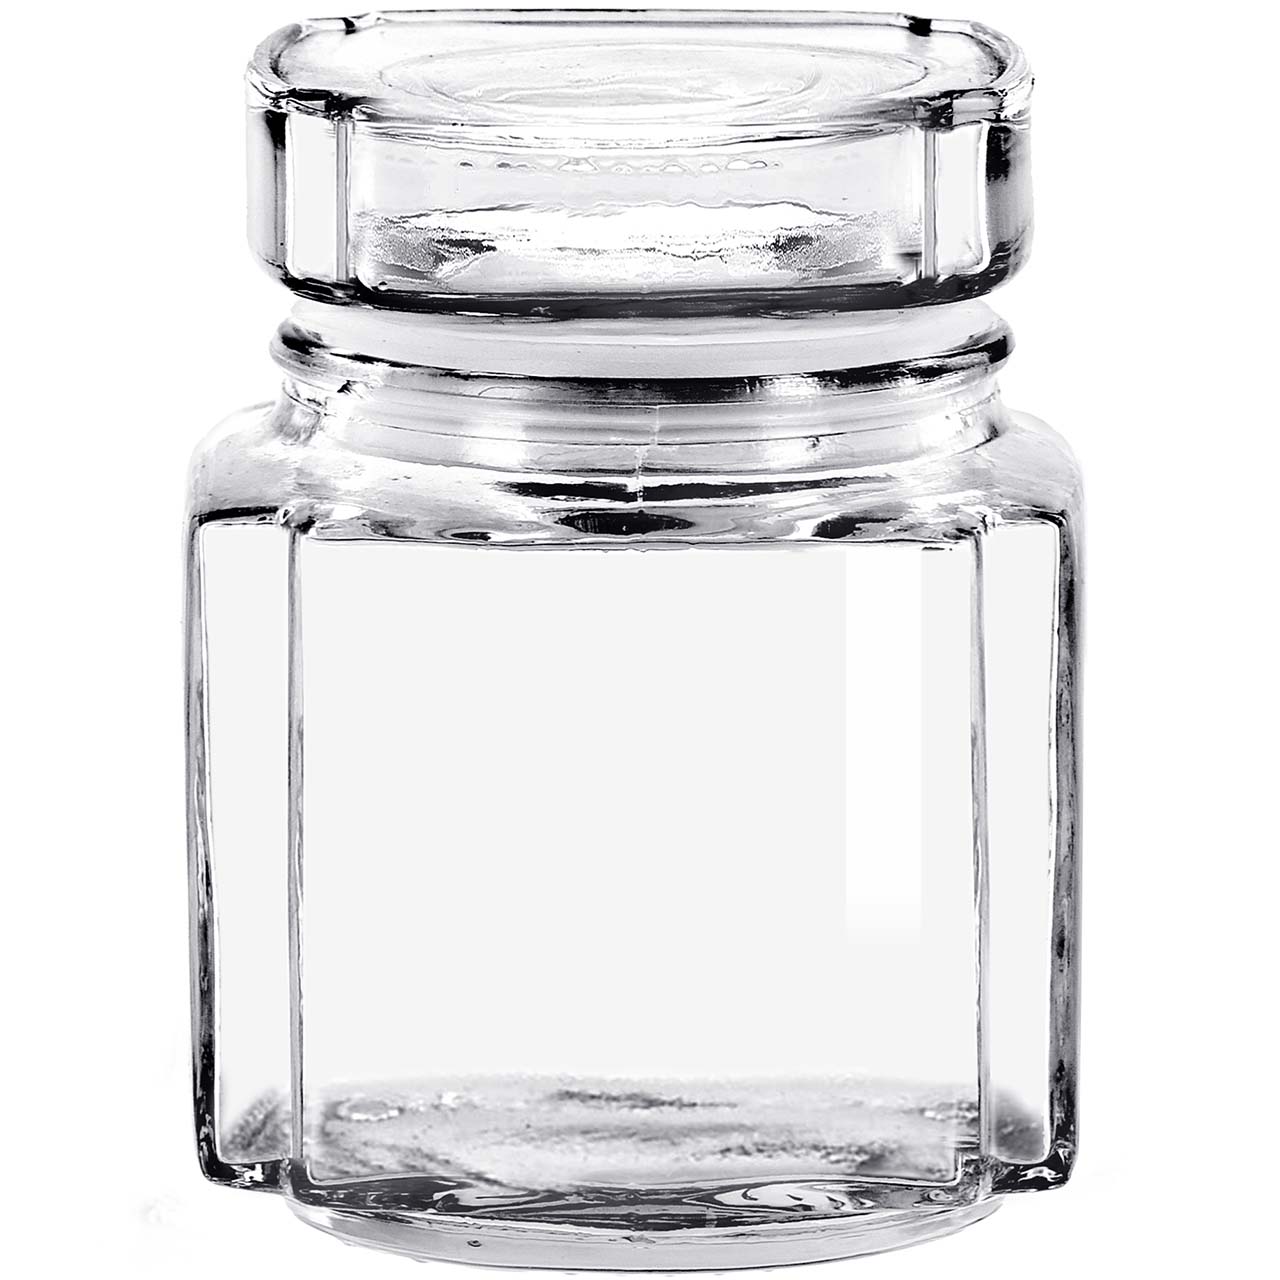 11oz Acropolis Jar with glass lid